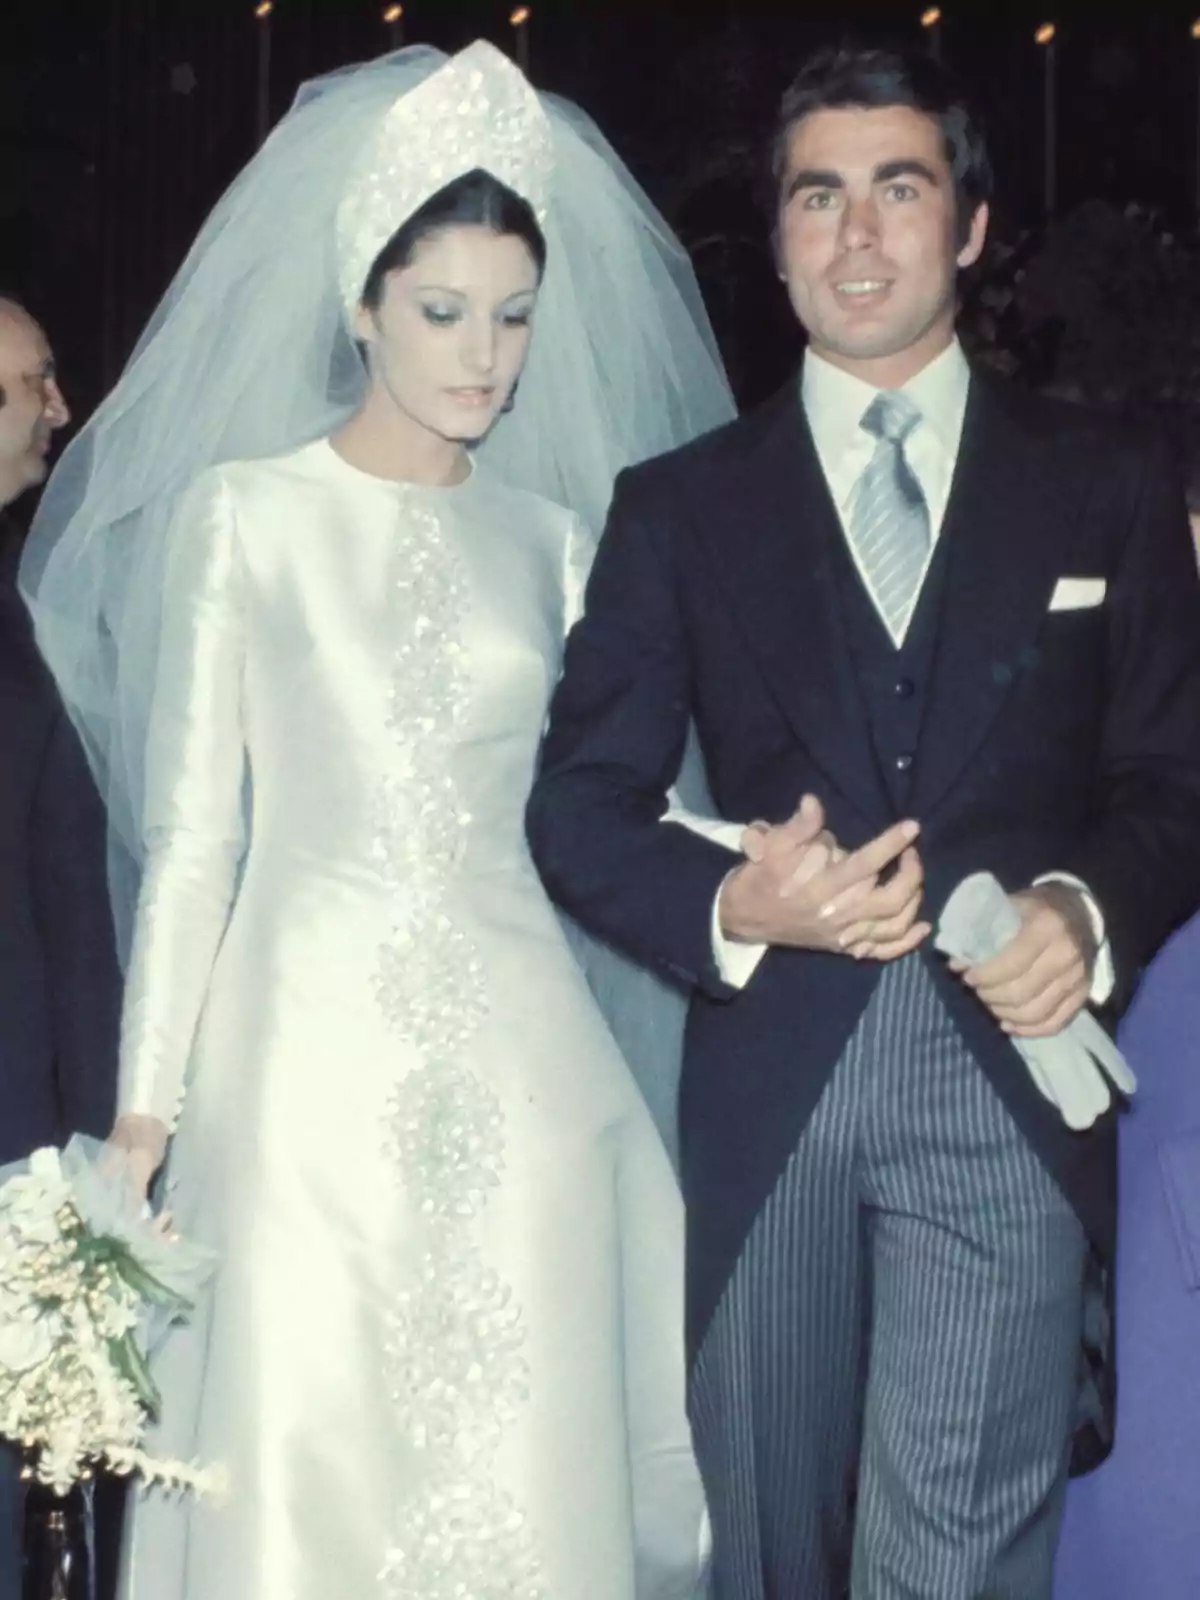 Una pareja vestida de novios, la mujer lleva un vestido blanco con detalles bordados y un velo, mientras que el hombre viste un traje oscuro con corbata.